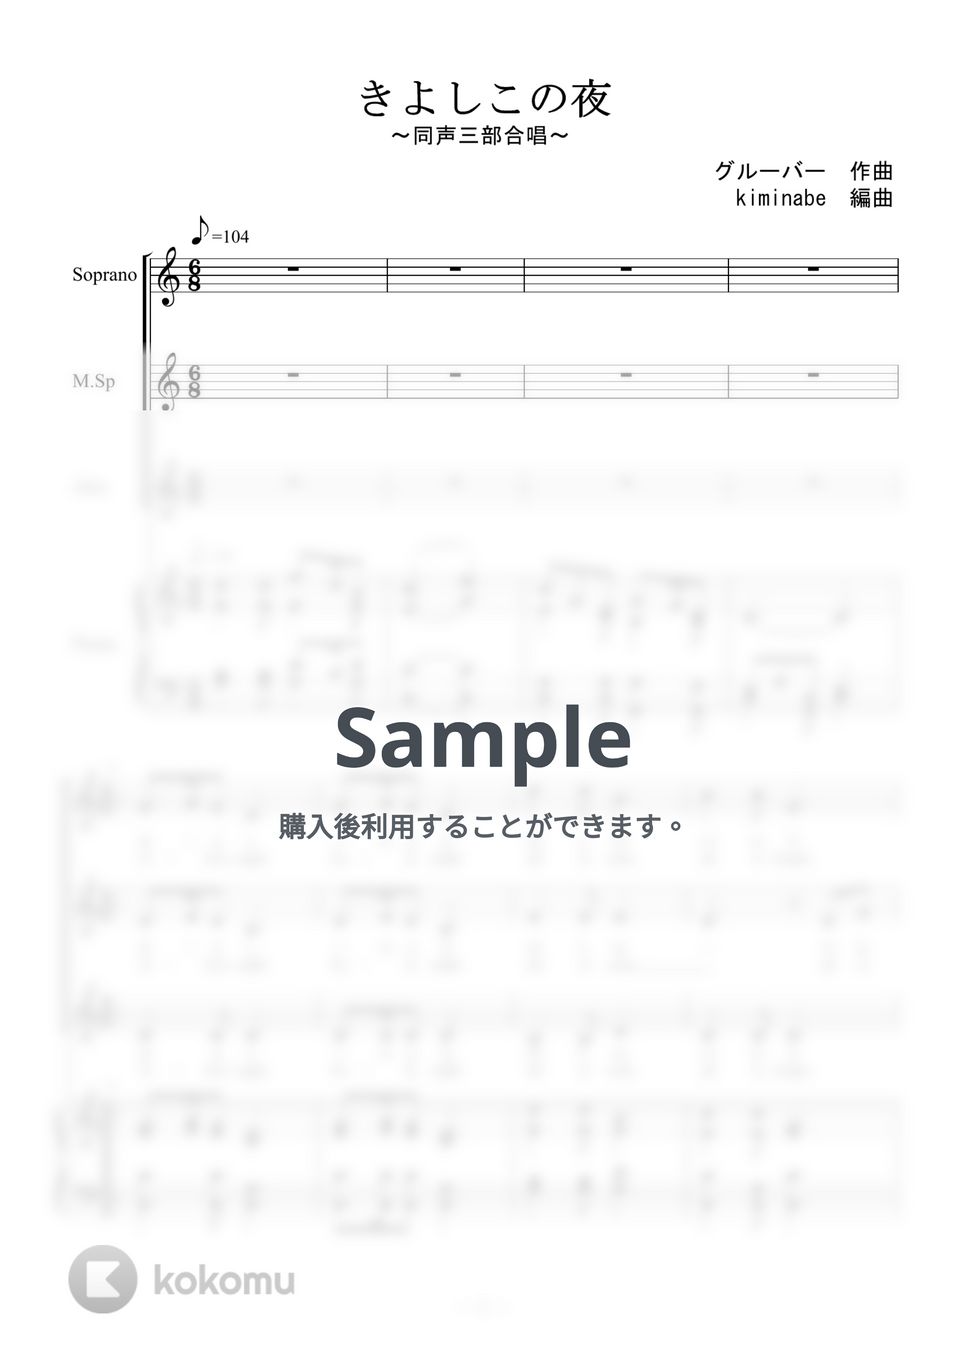 クリスマスソング - 聖夜 (同声三部合唱) by kiminabe